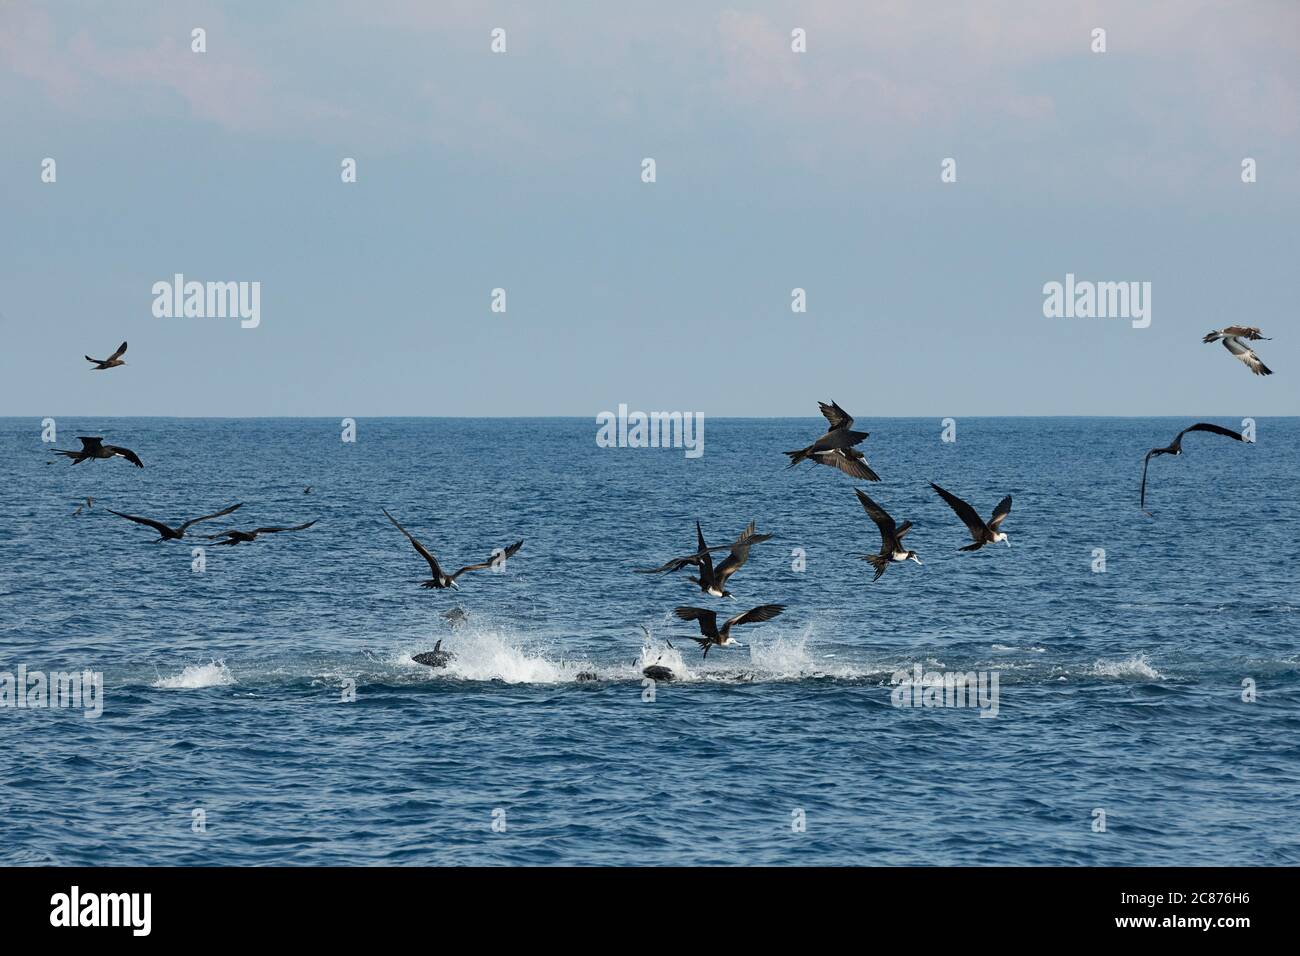 Le sardine frenate fanno bollire la superficie del mare mentre freneticamente cercano di sfuggire all'attacco di tonno pinna gialla e magnifici uccelli fregati, Costa Rica Foto Stock